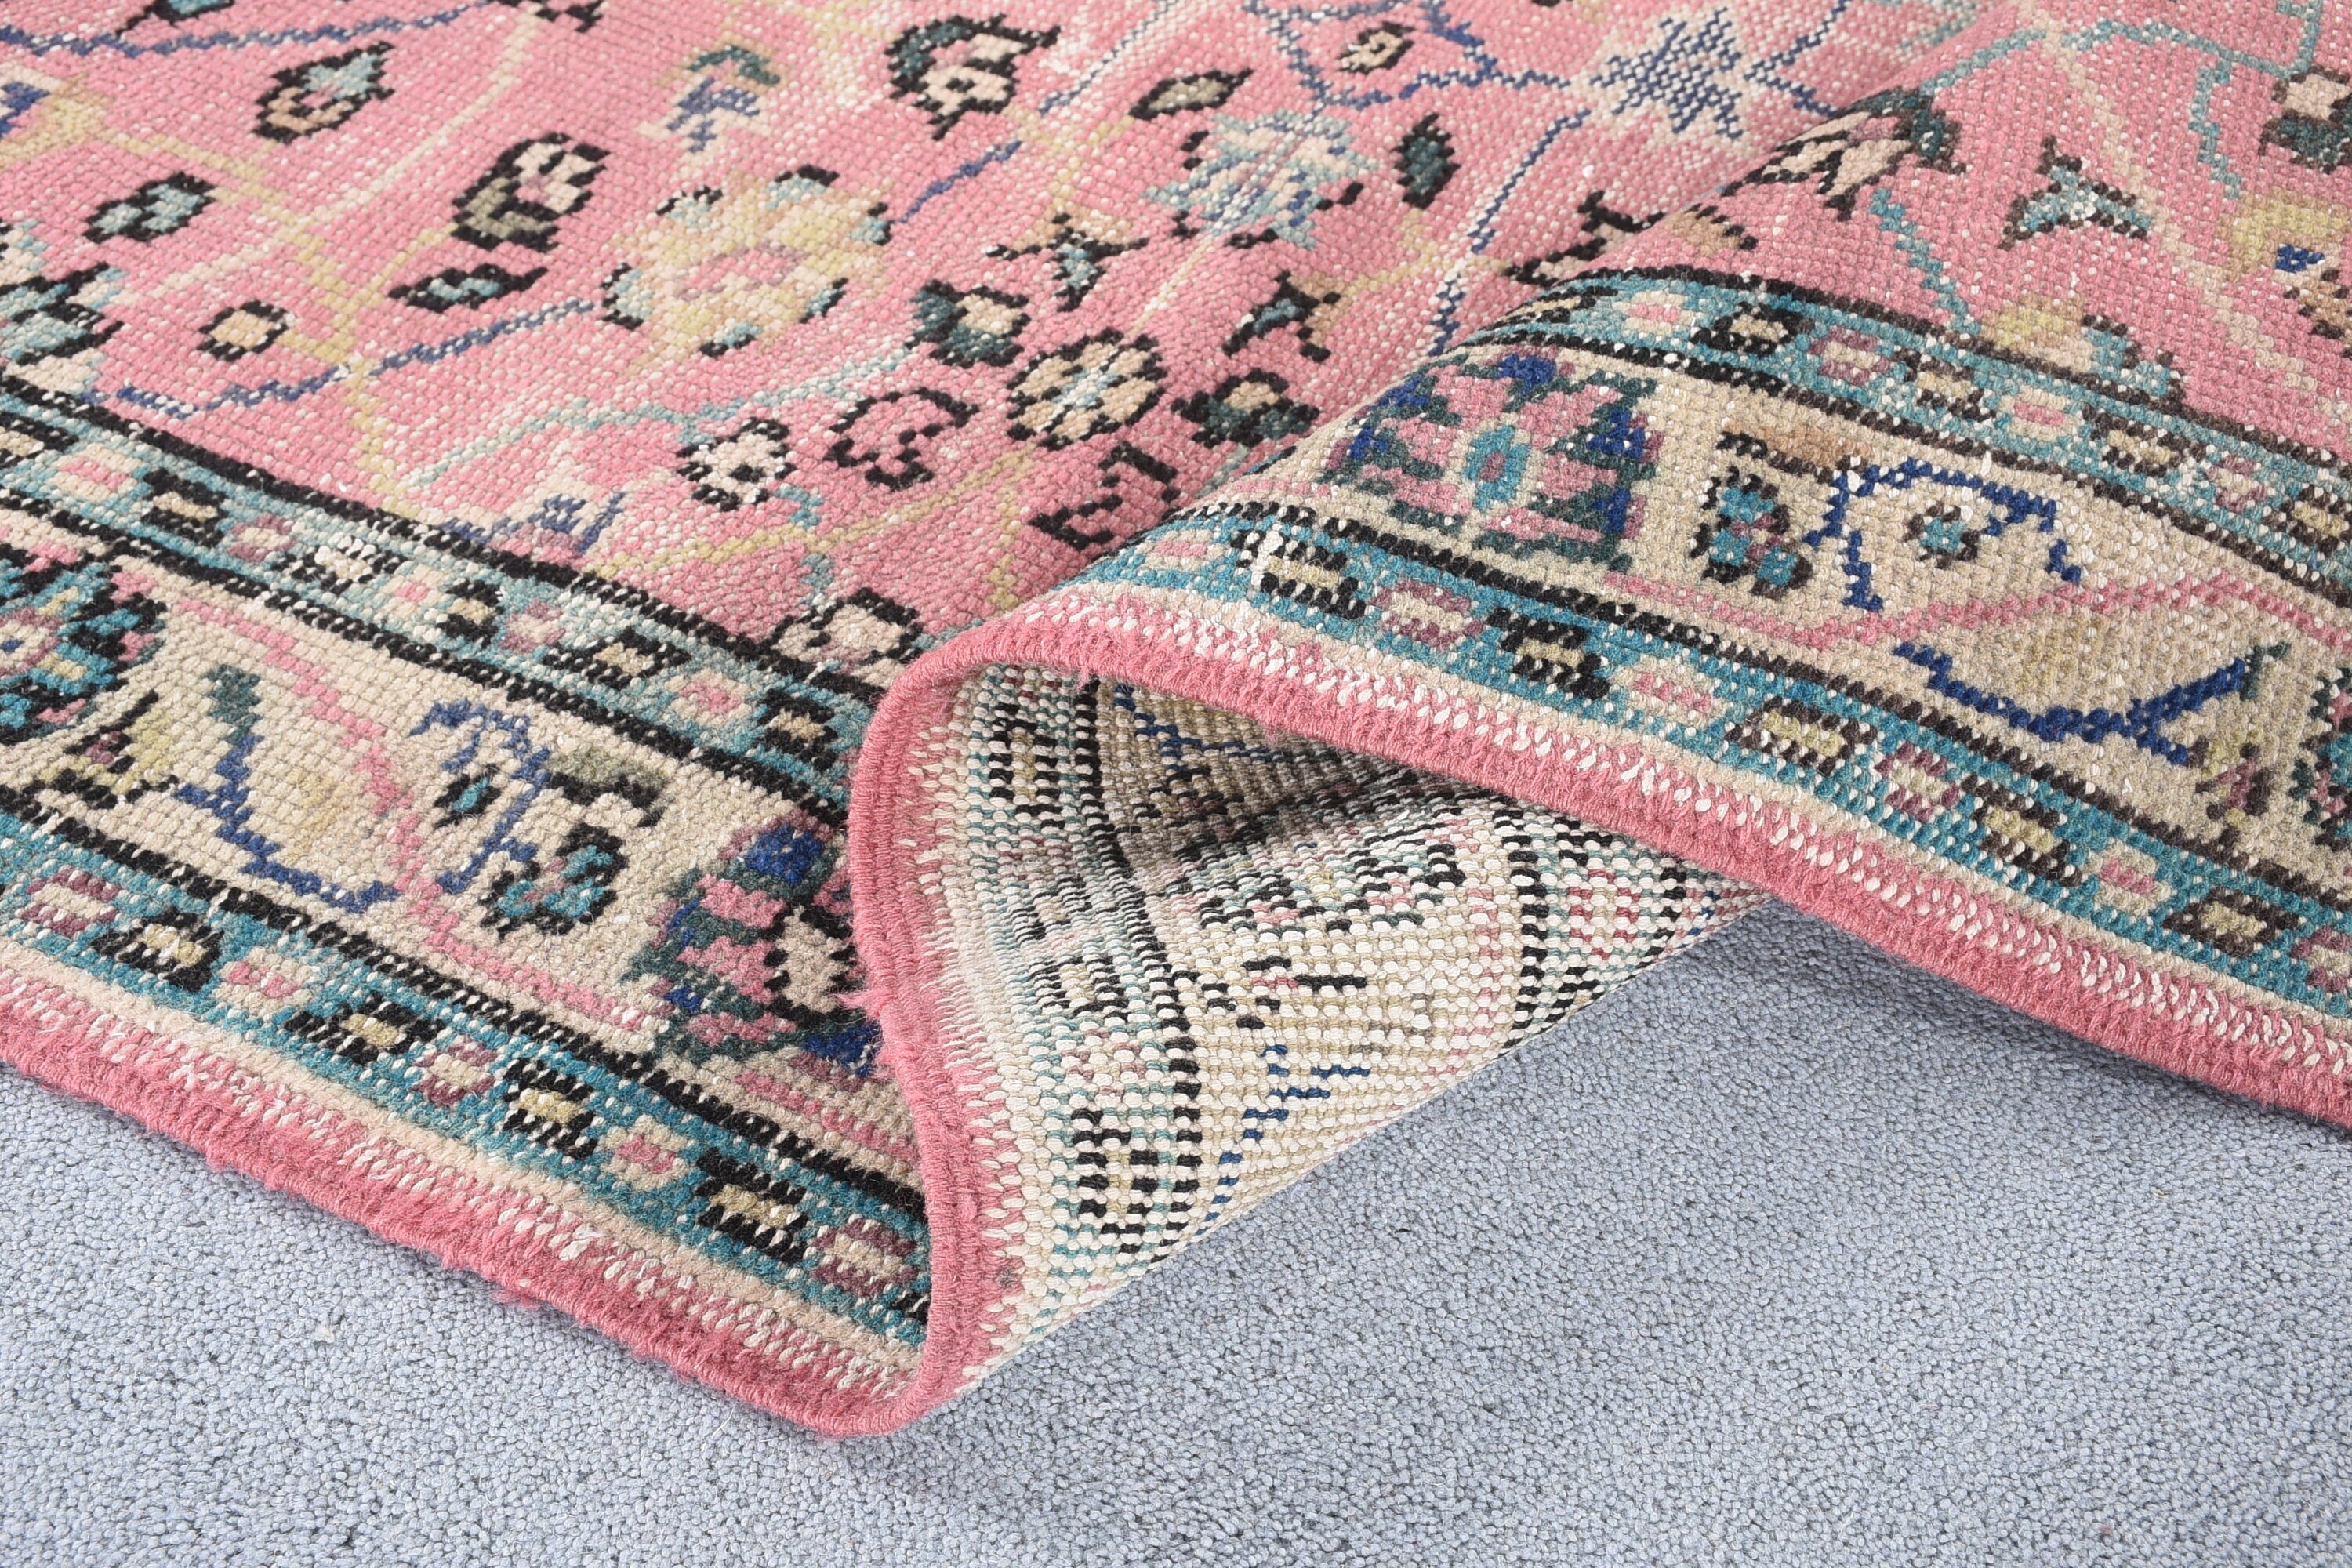 Turkish Rug, Pink Oriental Rugs, Bedroom Rugs, Wool Rugs, Vintage Rug, Rugs for Nursery, Kitchen Rug, 4.6x6.7 ft Area Rug